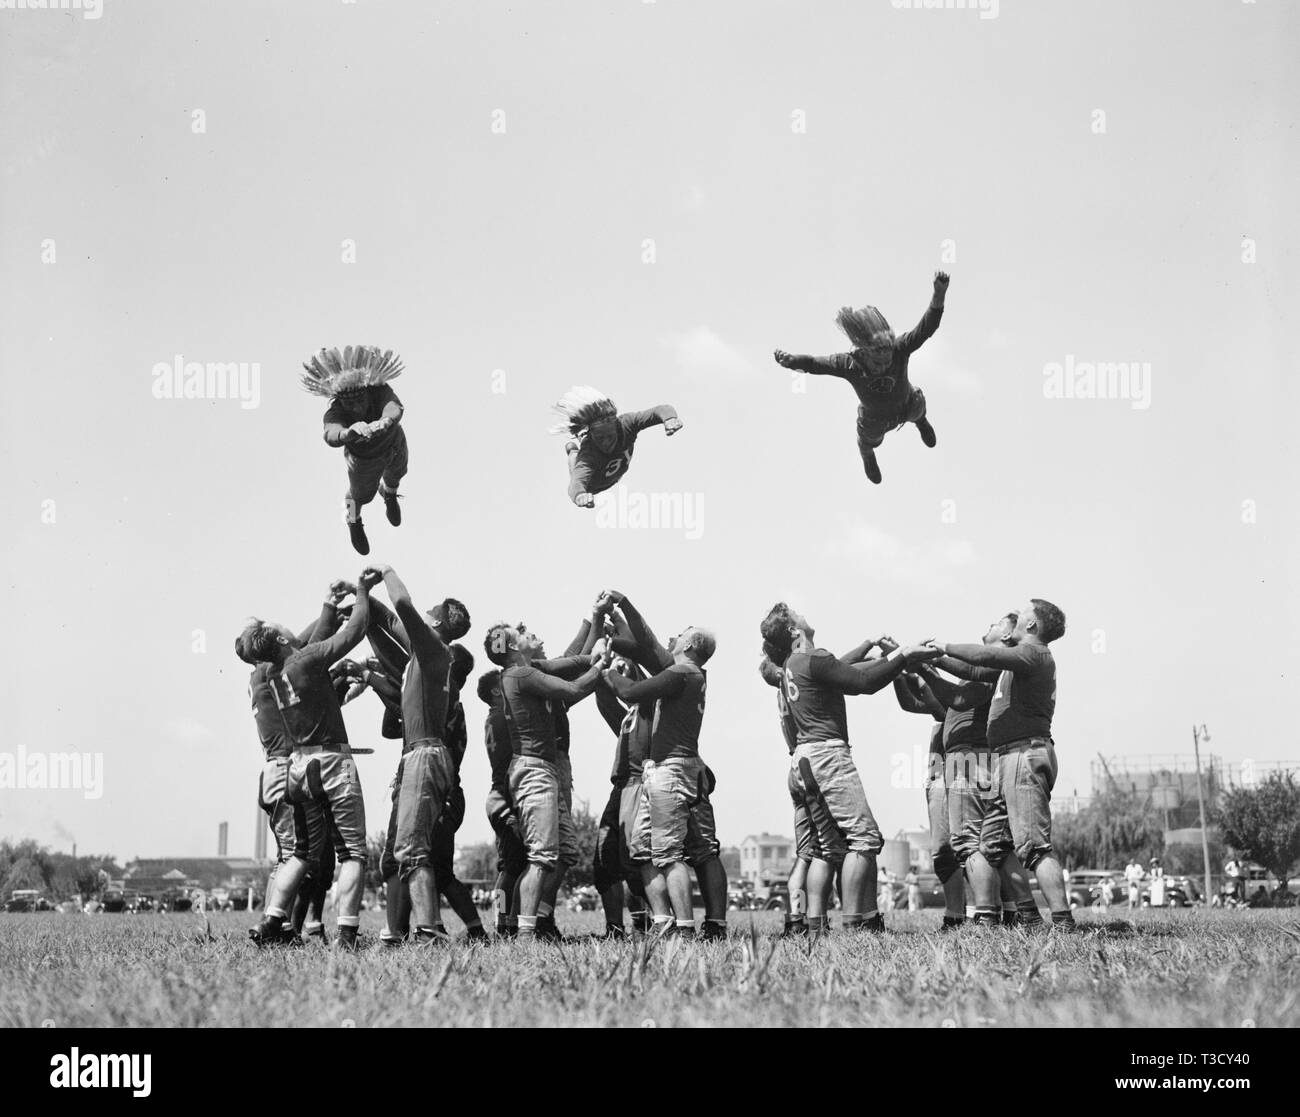 He-man ejercicio tomó el lugar de calistenia hoy como el Washington Redskins, su entrada en la Liga Profesional de Fútbol Nacional, comenzó su entrenamiento. Los chicos "volando a través del aire' son, de izquierda a derecha: Millner (Notre Dame), Rentner (Noroeste) y Peterson (West Virginia Wesleyan)) 38/28/37 Foto de stock